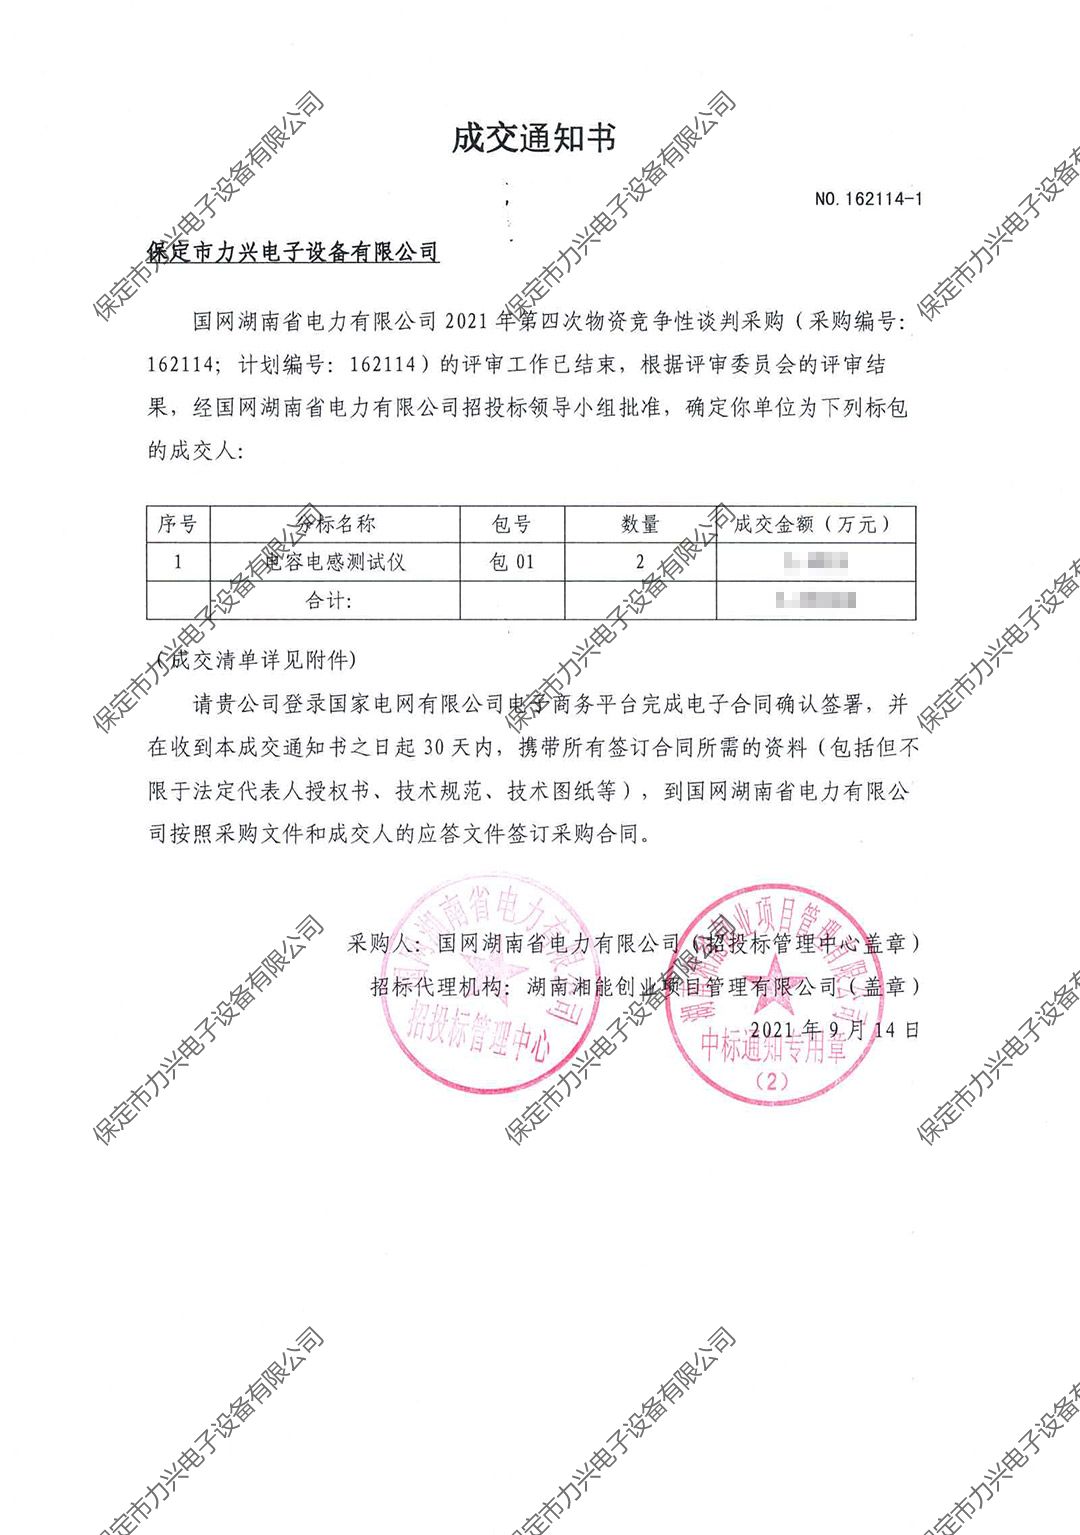 國網湖南省電力有限公司2021年第四次物資競爭性談判項目.jpg